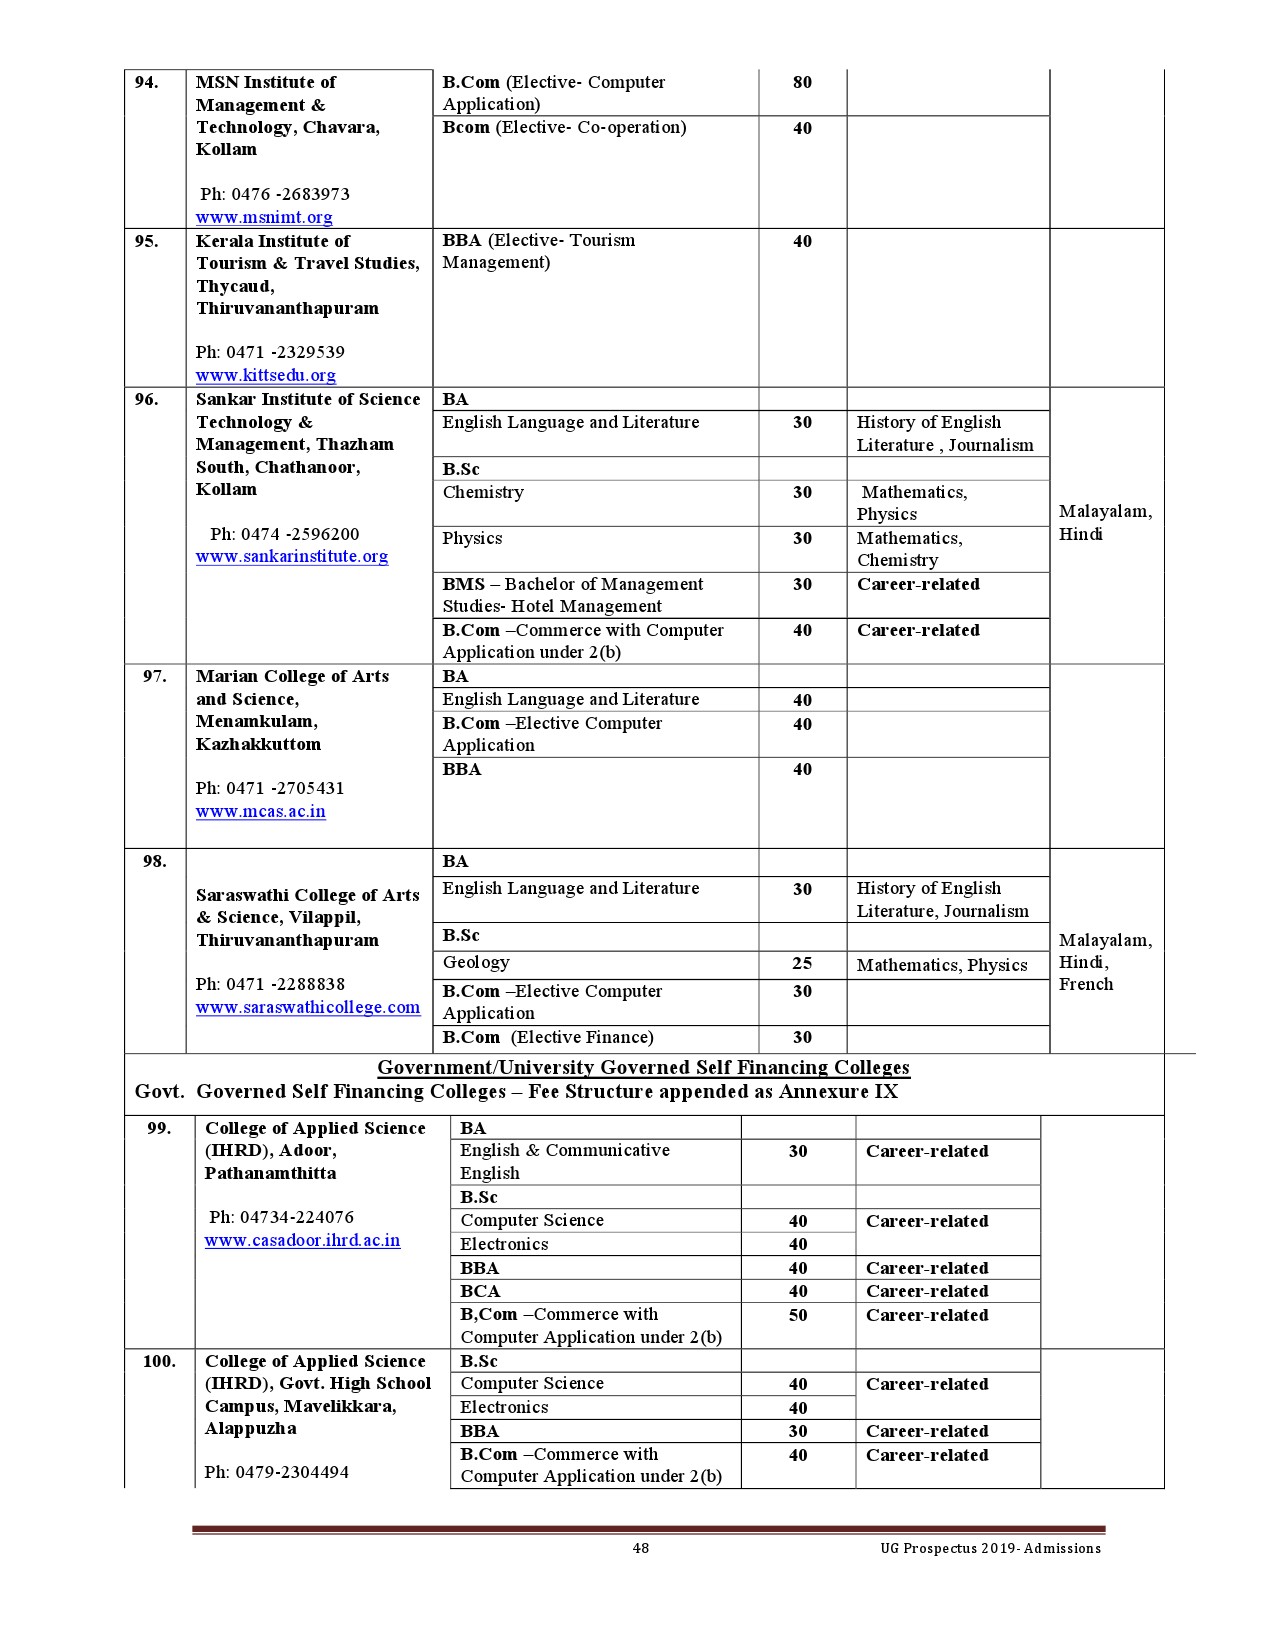 Kerala University UG Admission Prospectus 2019 - Notification Image 48